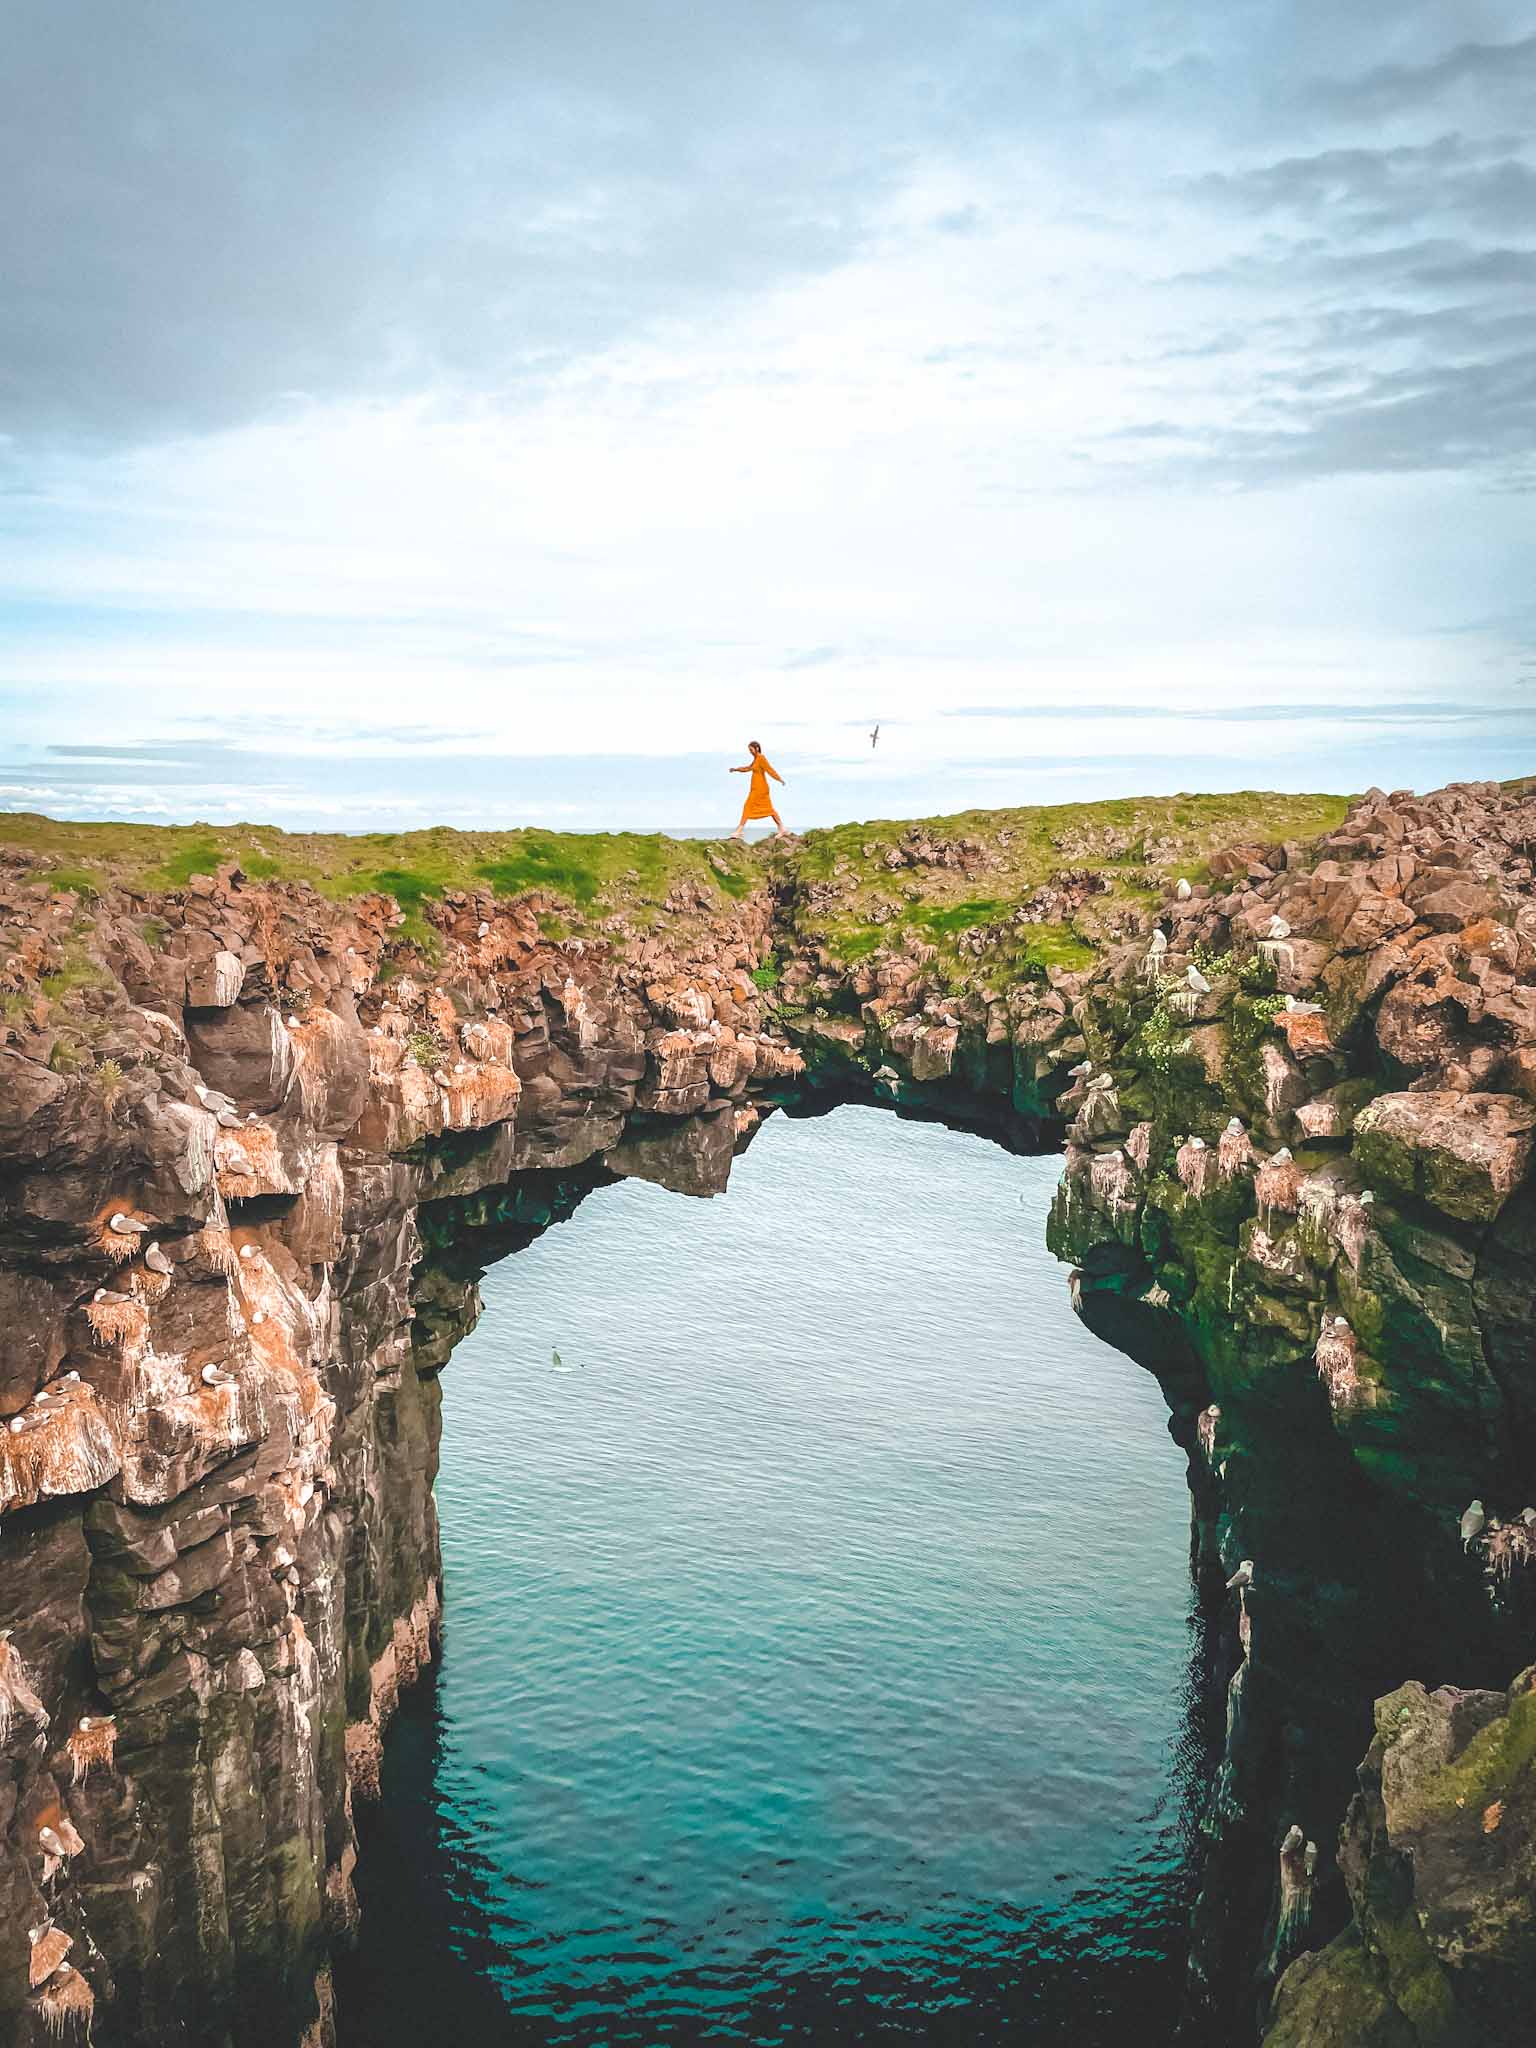 Natural stone arches in Iceland - Stone bridge in Arnarstapi